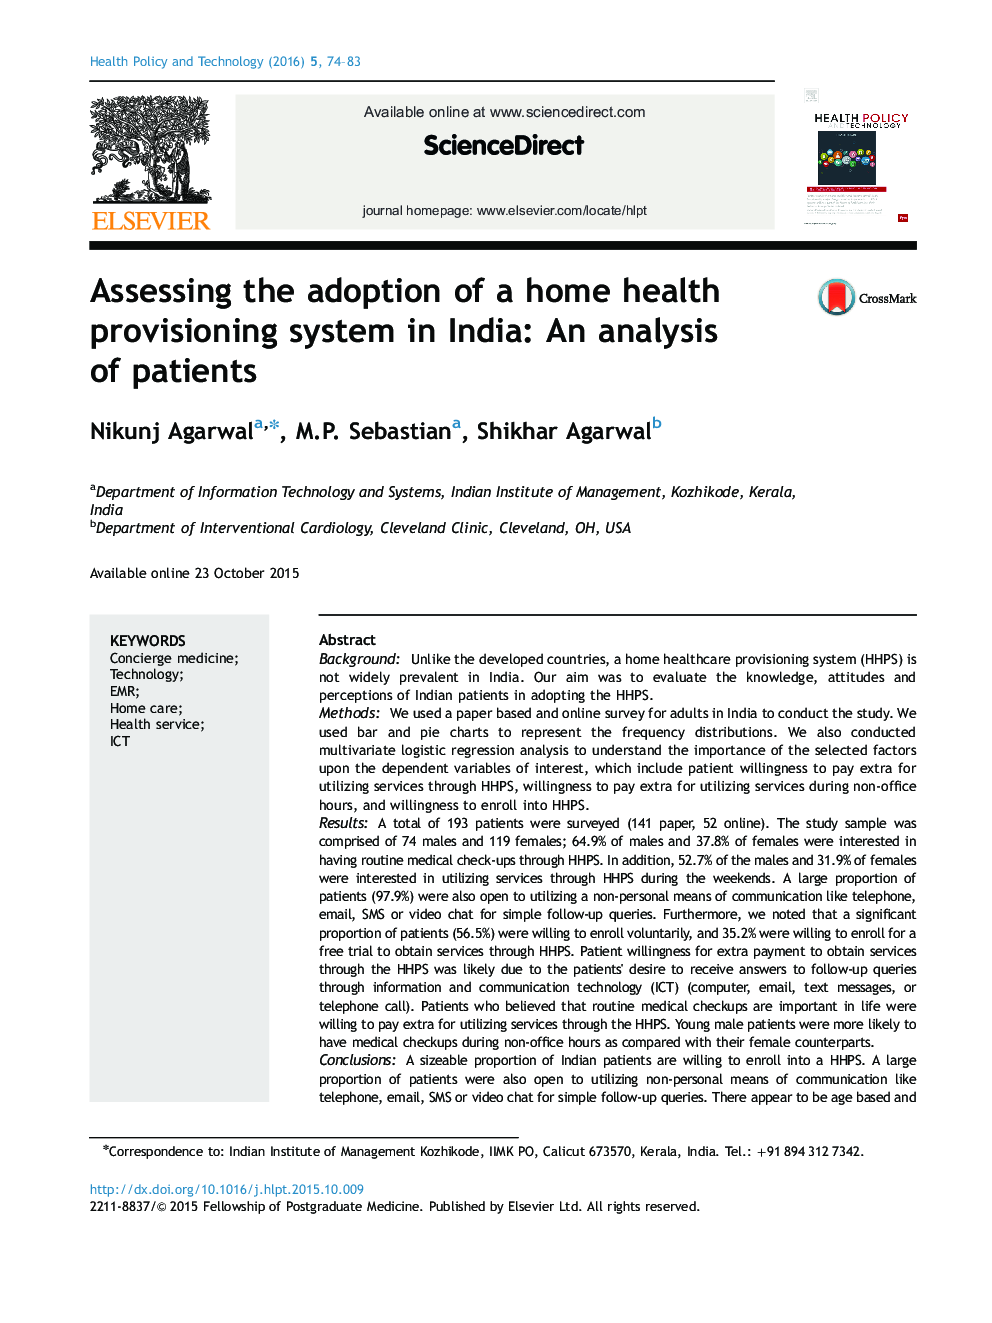 ارزیابی پذیرش یک سیستم تأمین بهداشت در خانه در هند: تجزیه و تحلیل بیماران 